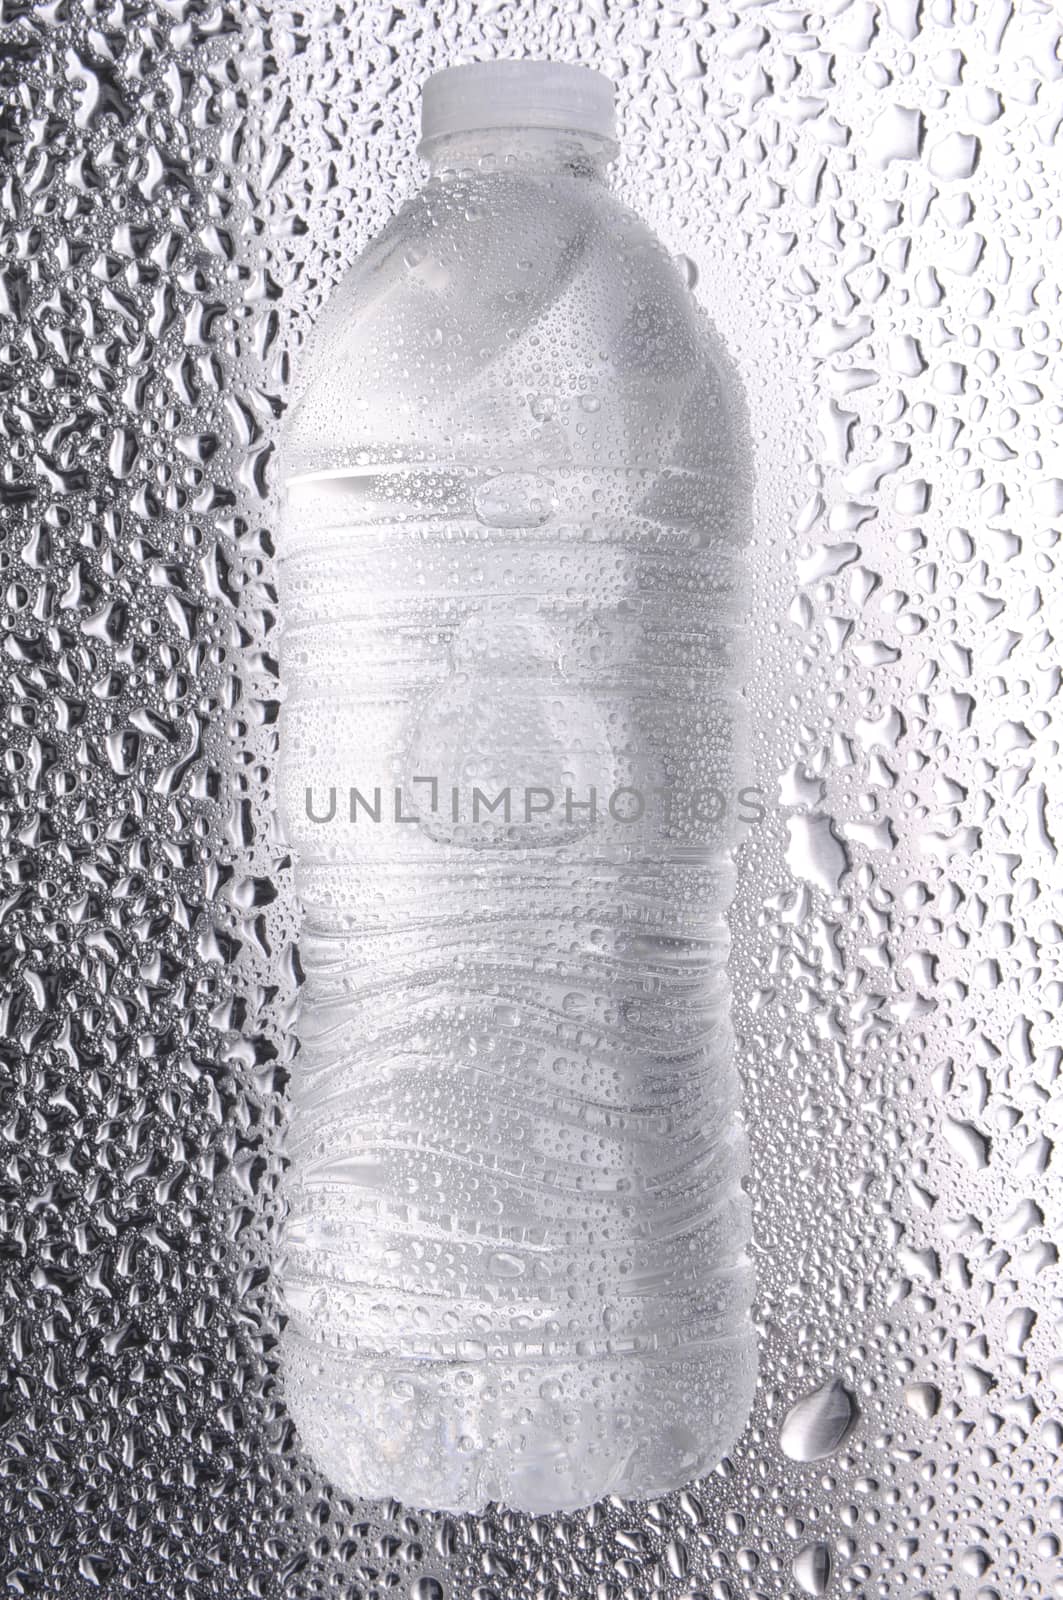 Water Bottle on Wet Metallic Surface by sCukrov